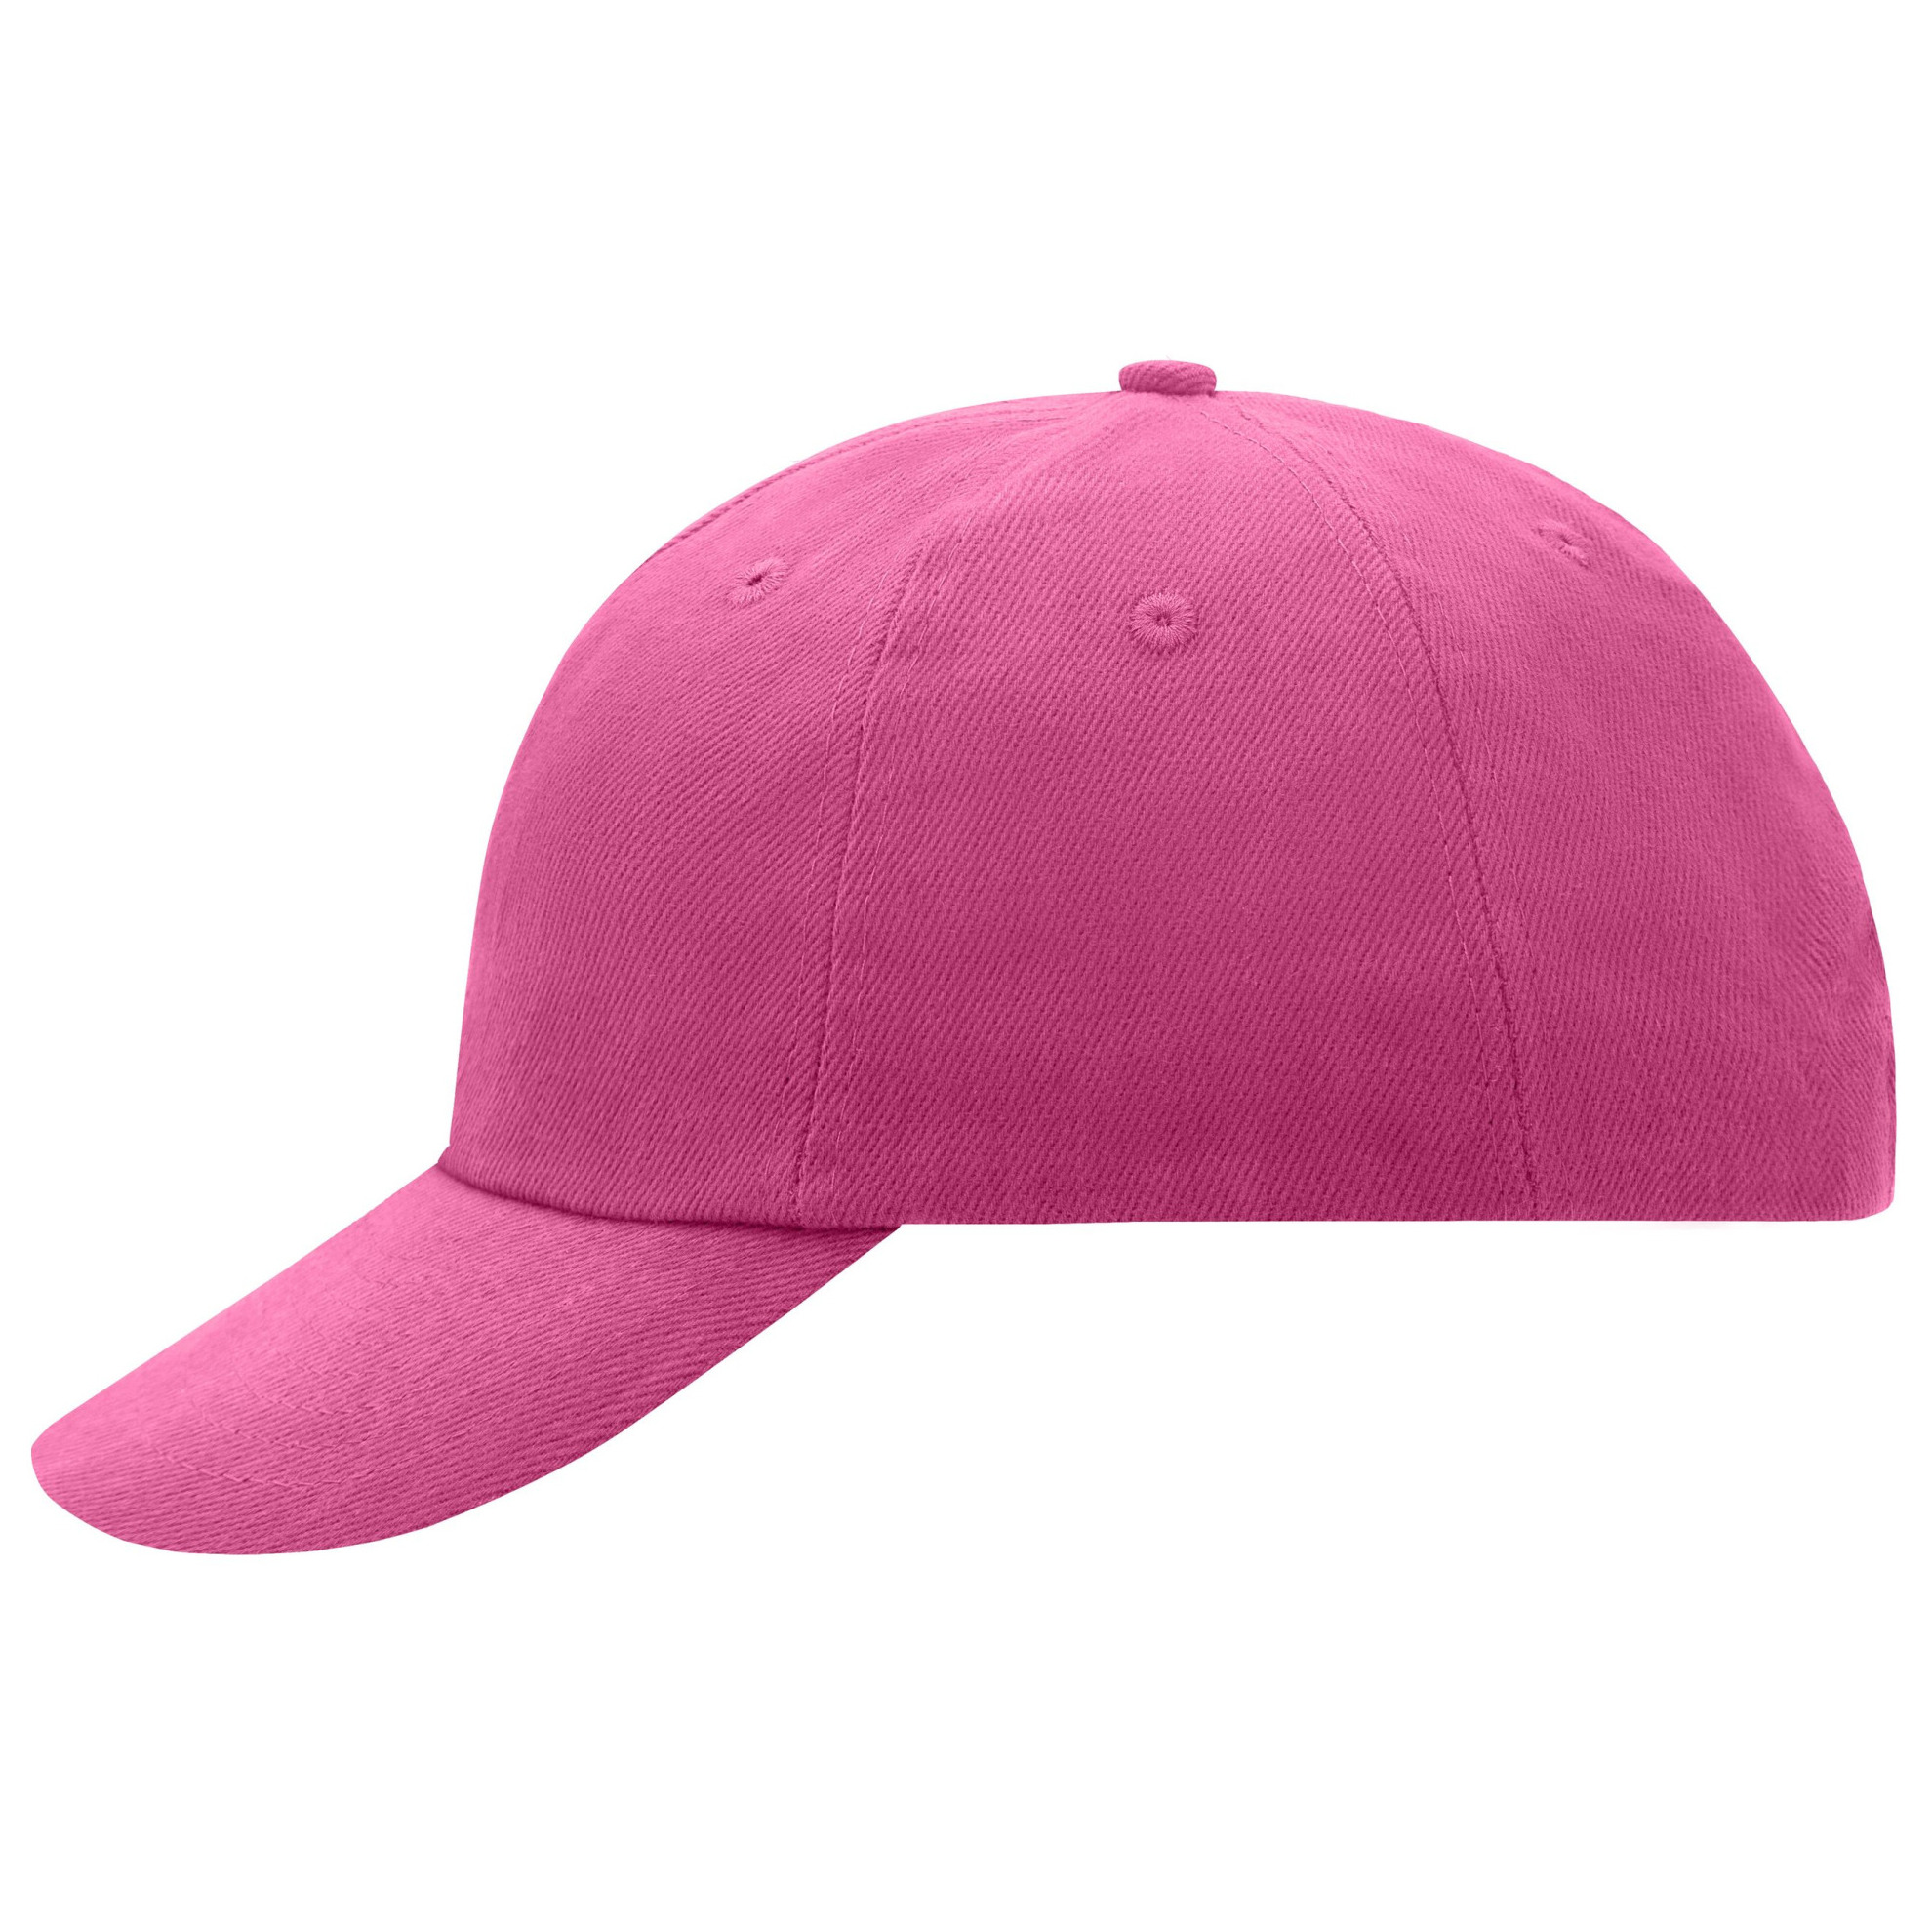 Baseballcaps in fuchsia roze kleur -